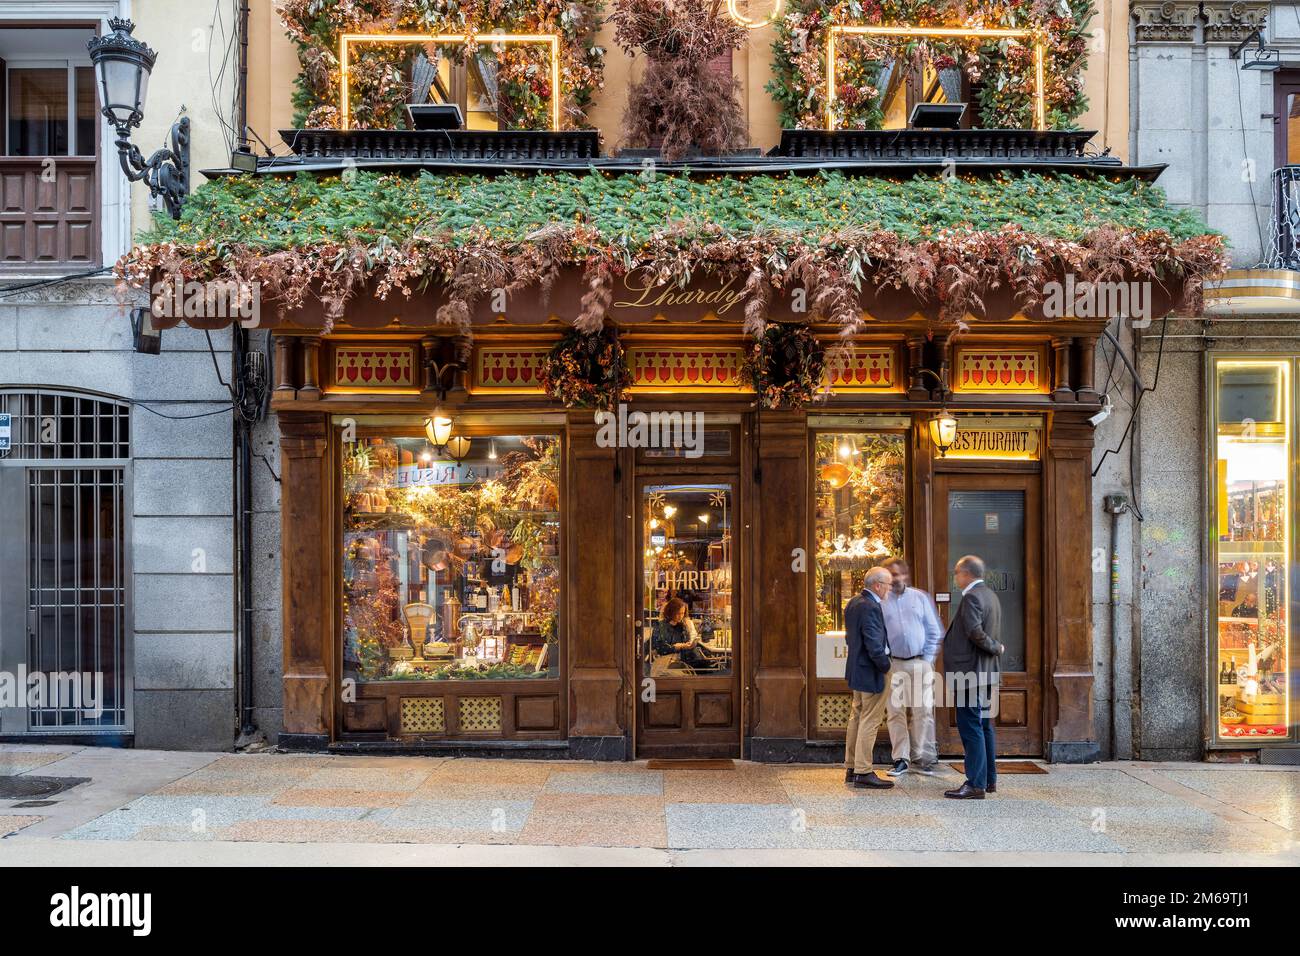 Fondé en 1839, le Restaurante Lhardy est l'un des plus anciens restaurants de Madrid, en Espagne Banque D'Images